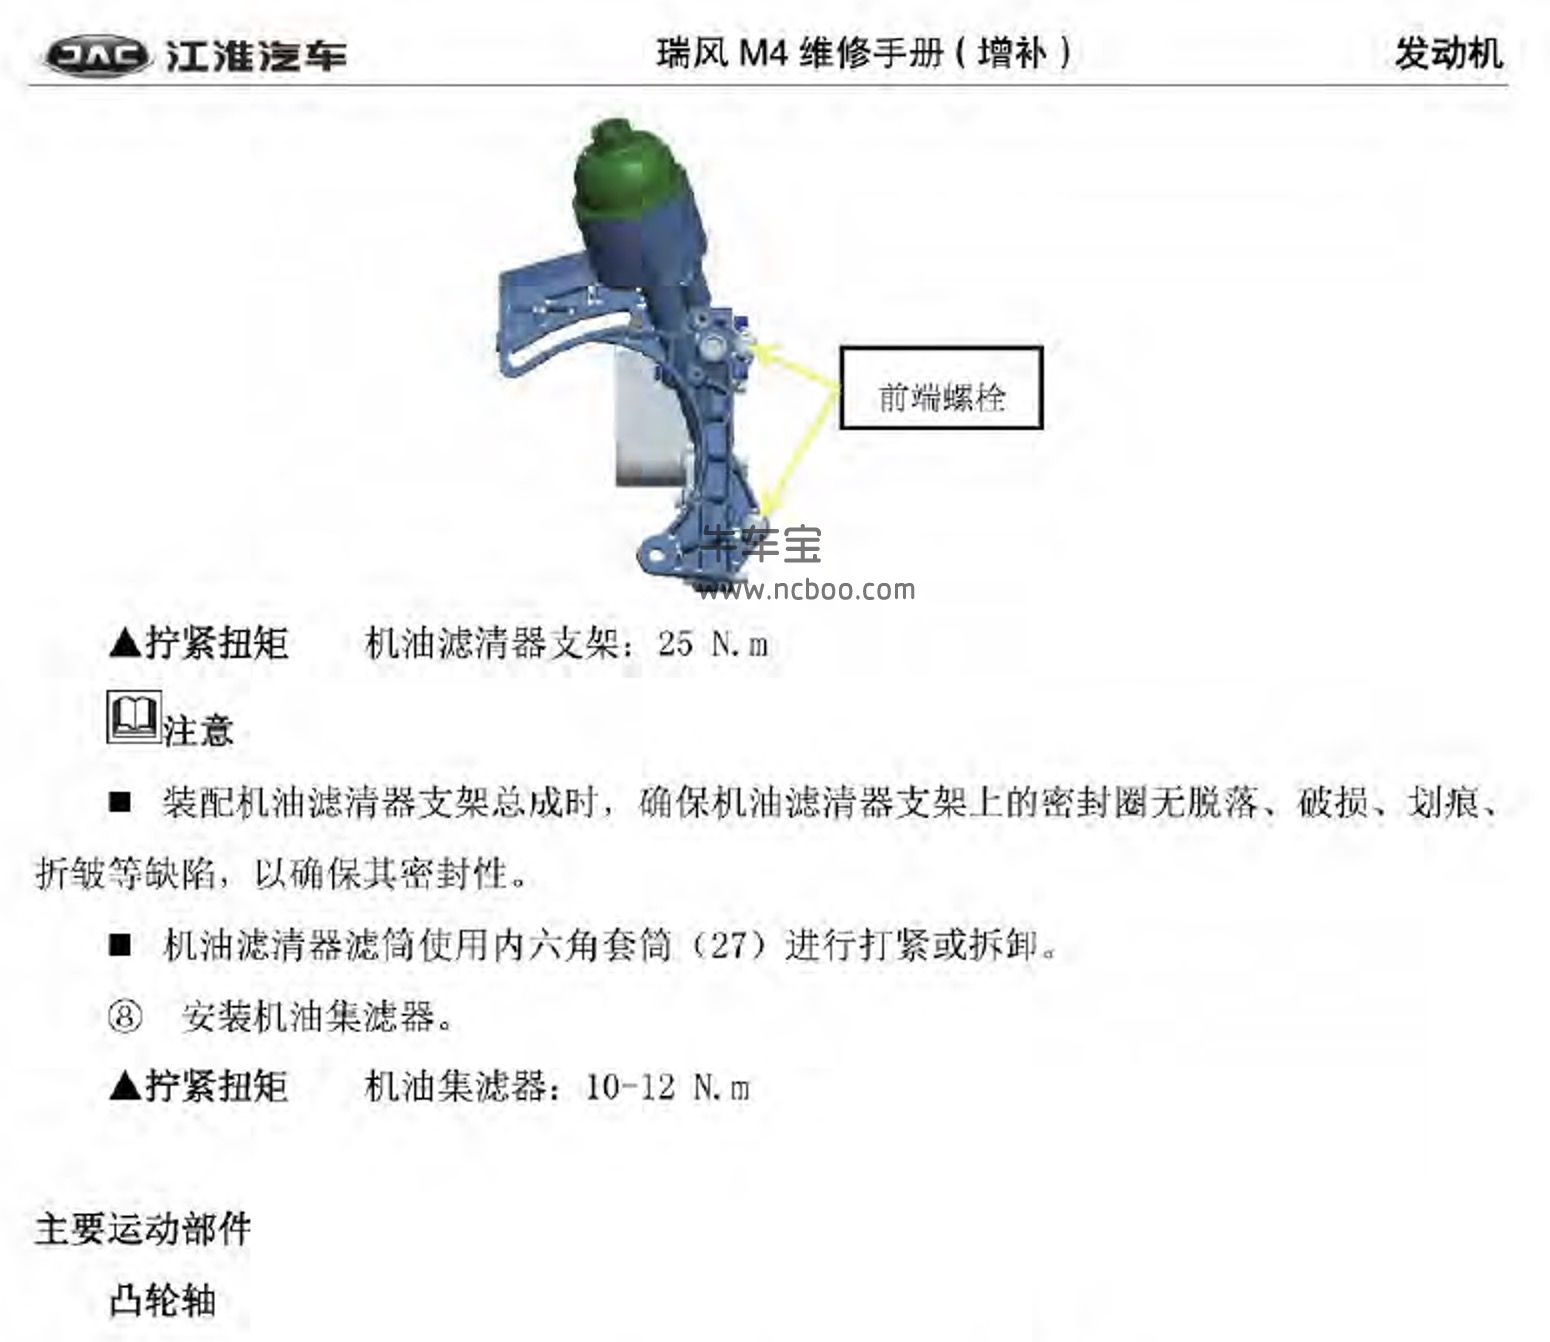 2018-2019款江淮瑞风M4原厂维修手册和电路图下载